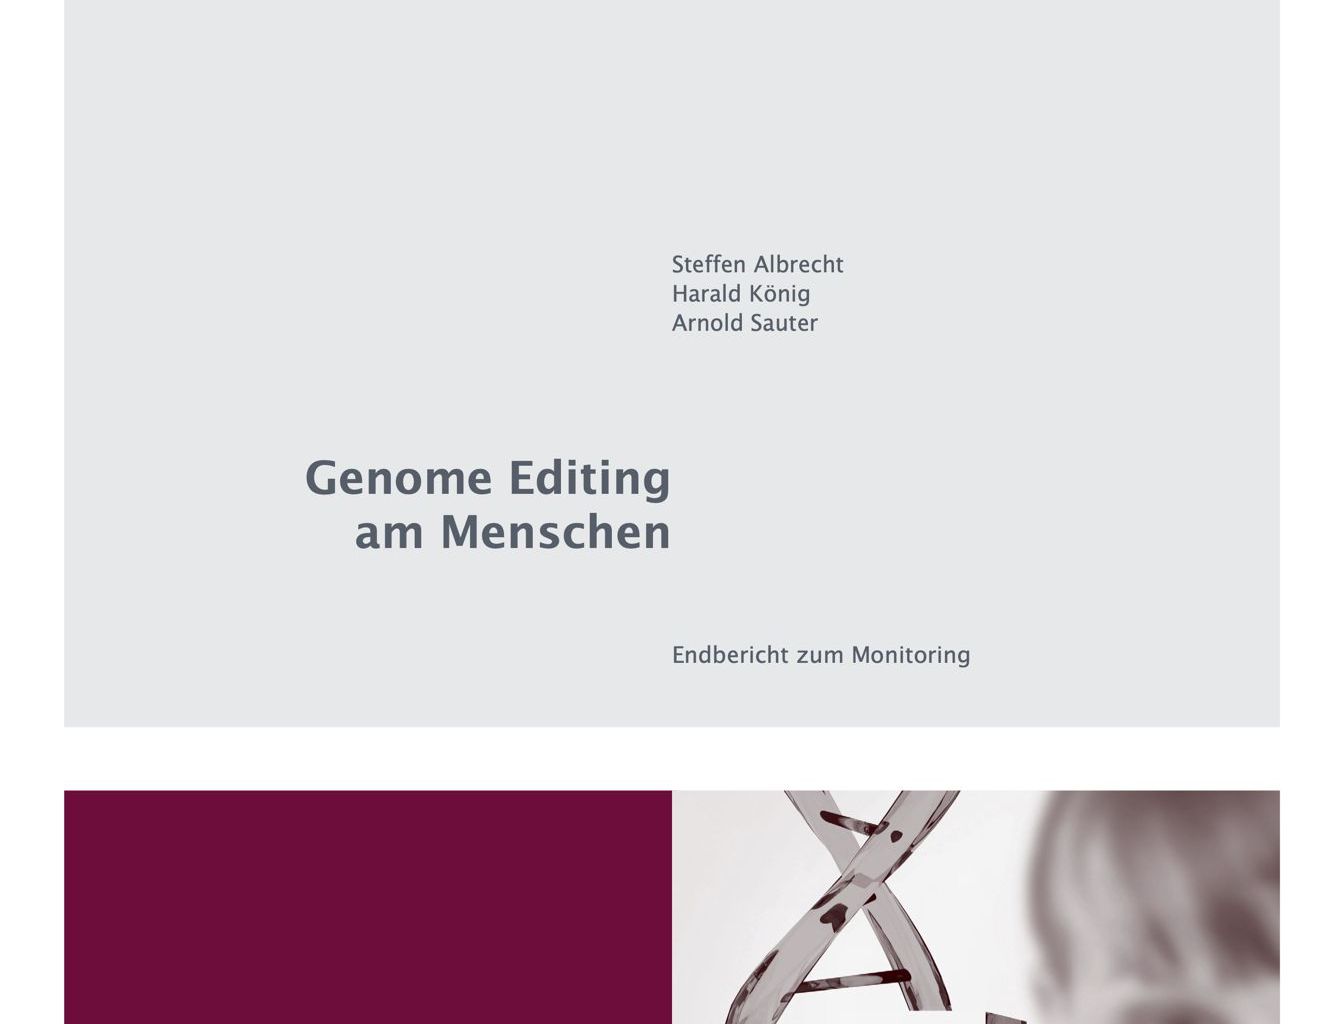 Genome Editing am Menschen - Hoffnungen oder Hybris?